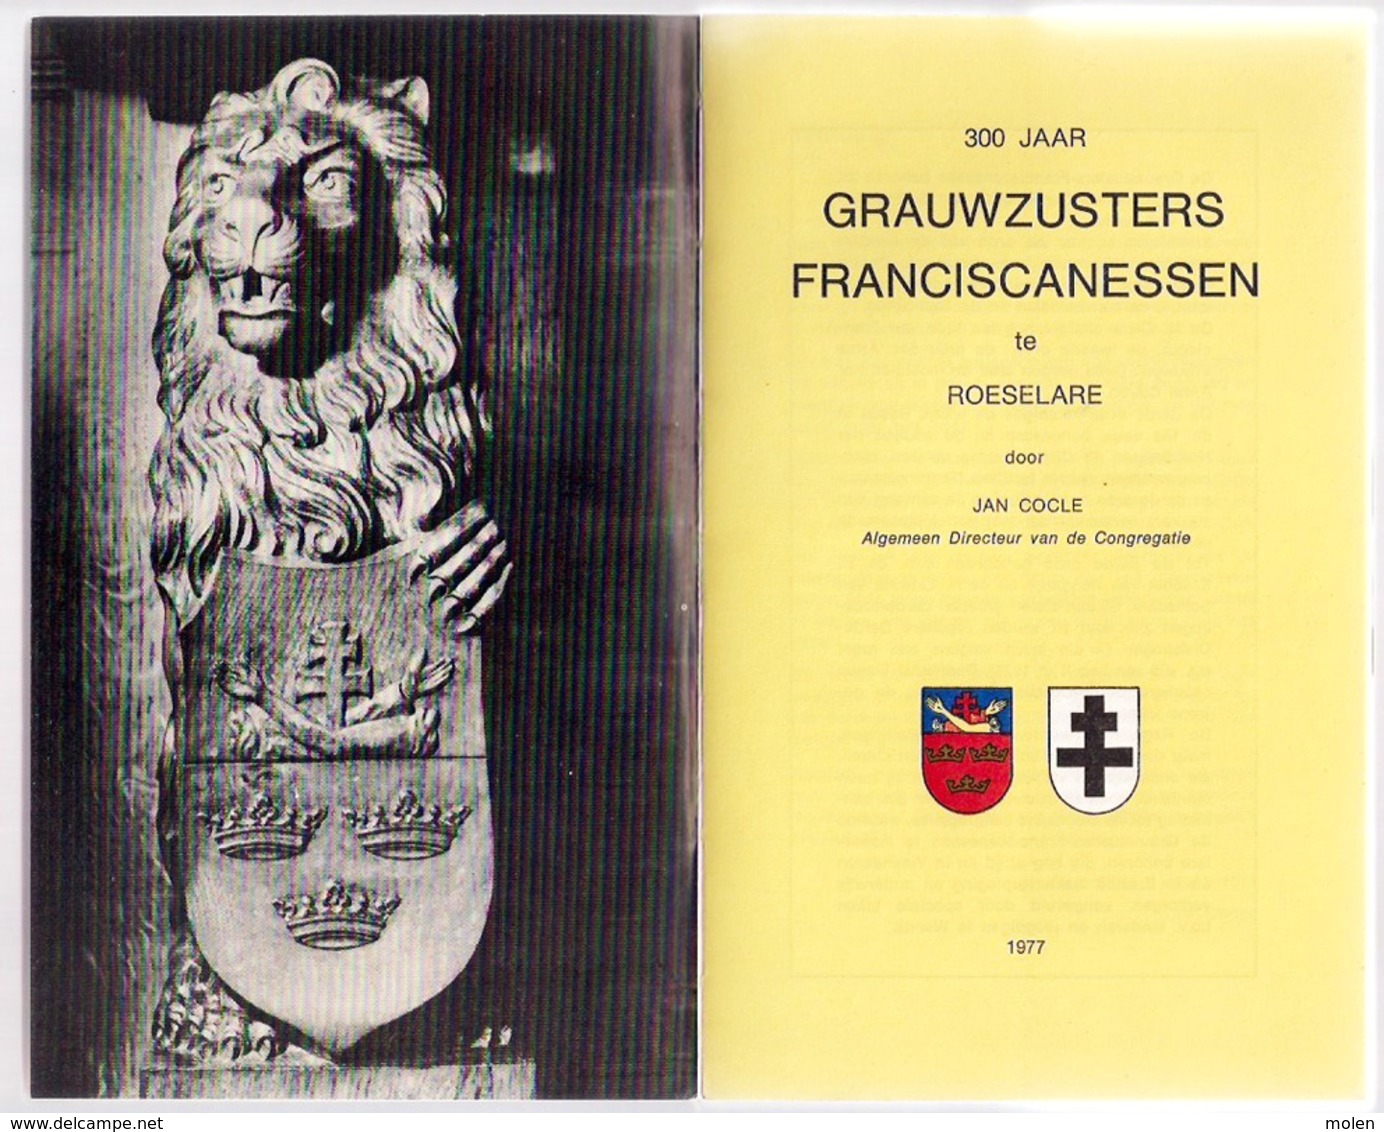 300 JAAR GRAUWZUSTERS FRANCISCANESSEN TE ROESELARE 175blz & Foto’s ©1977 Heemkunde Geschiedenis NON ZUSTERS ZUSTER Z465 - Roeselare